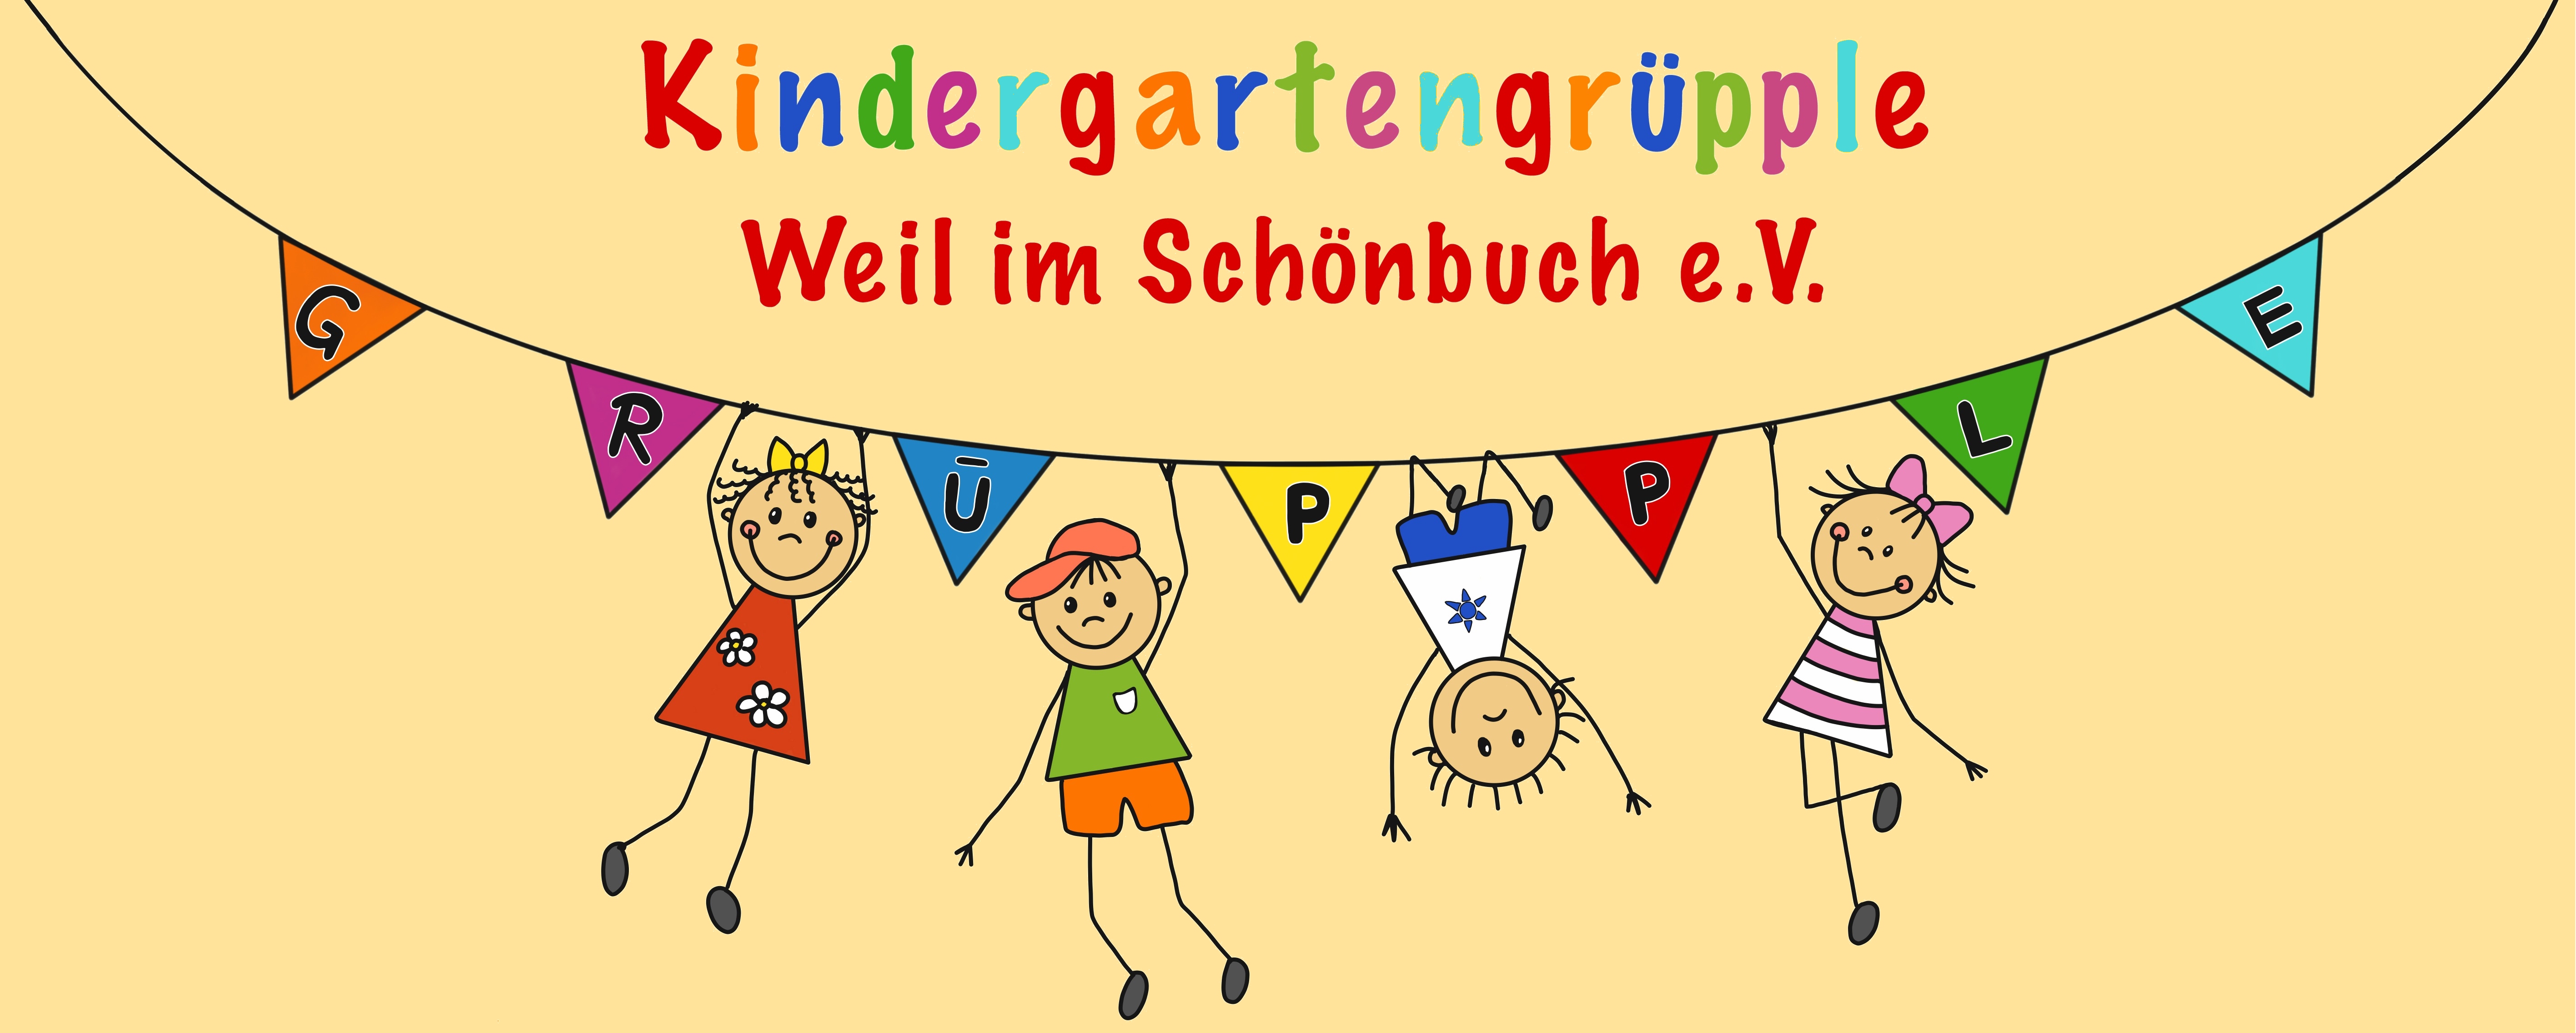 Kindergartengrüpple Weil im Schönbuch e.V.